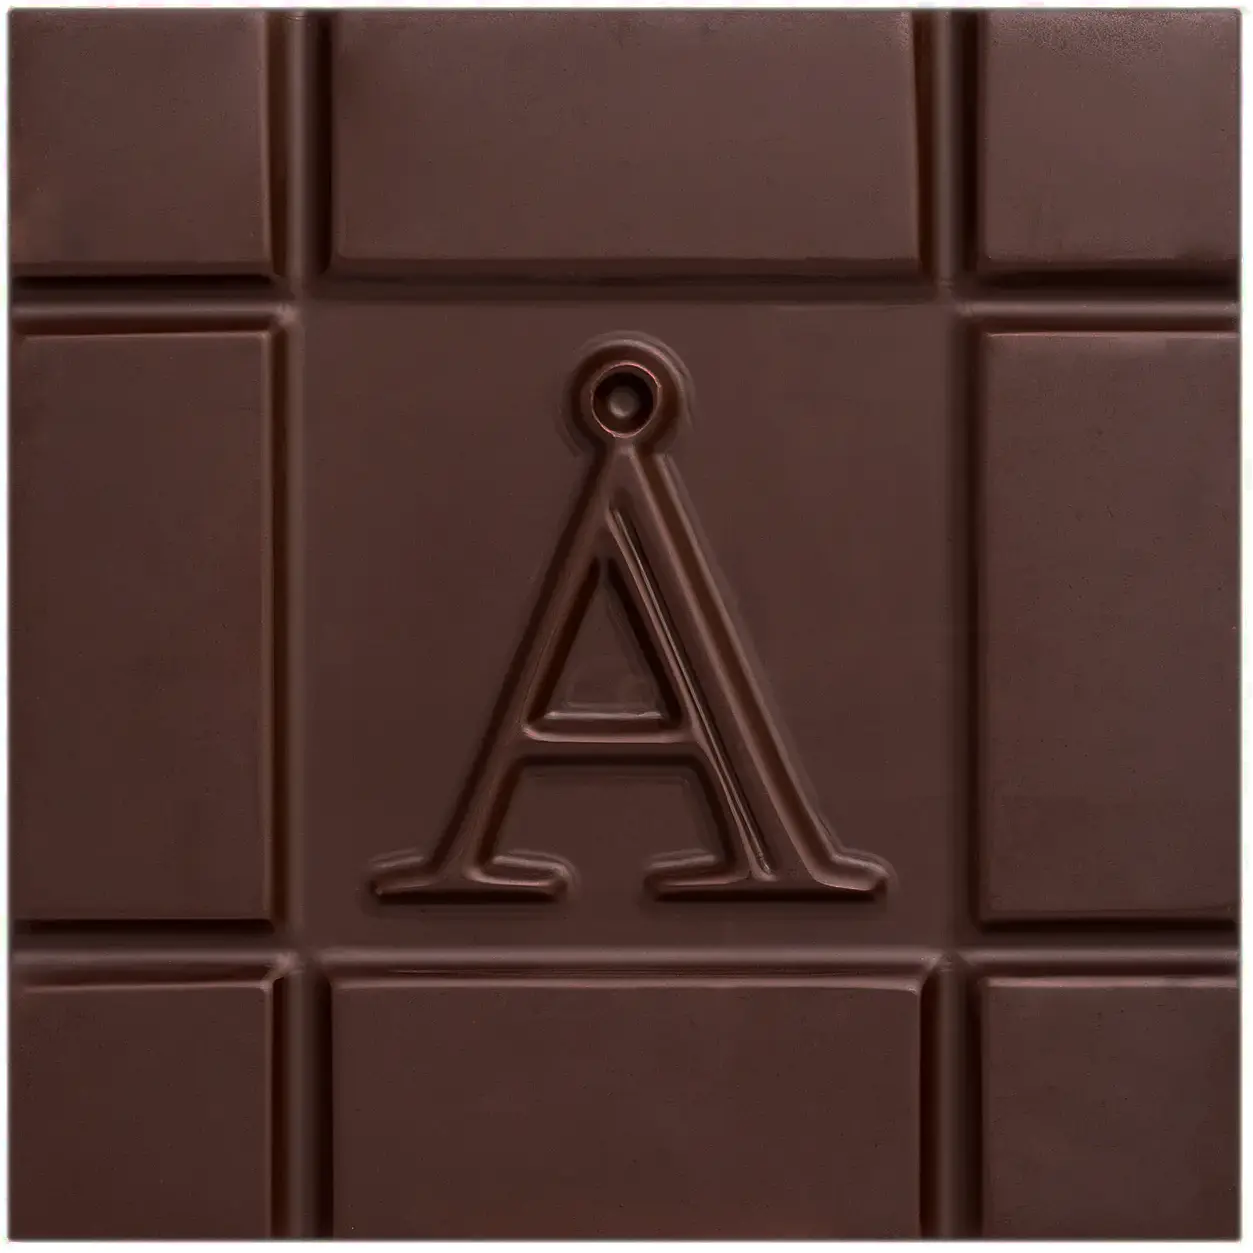 AKESSON'S | Dunkle Schokolade »Brazil Forastero« 75% | BIO | 60g